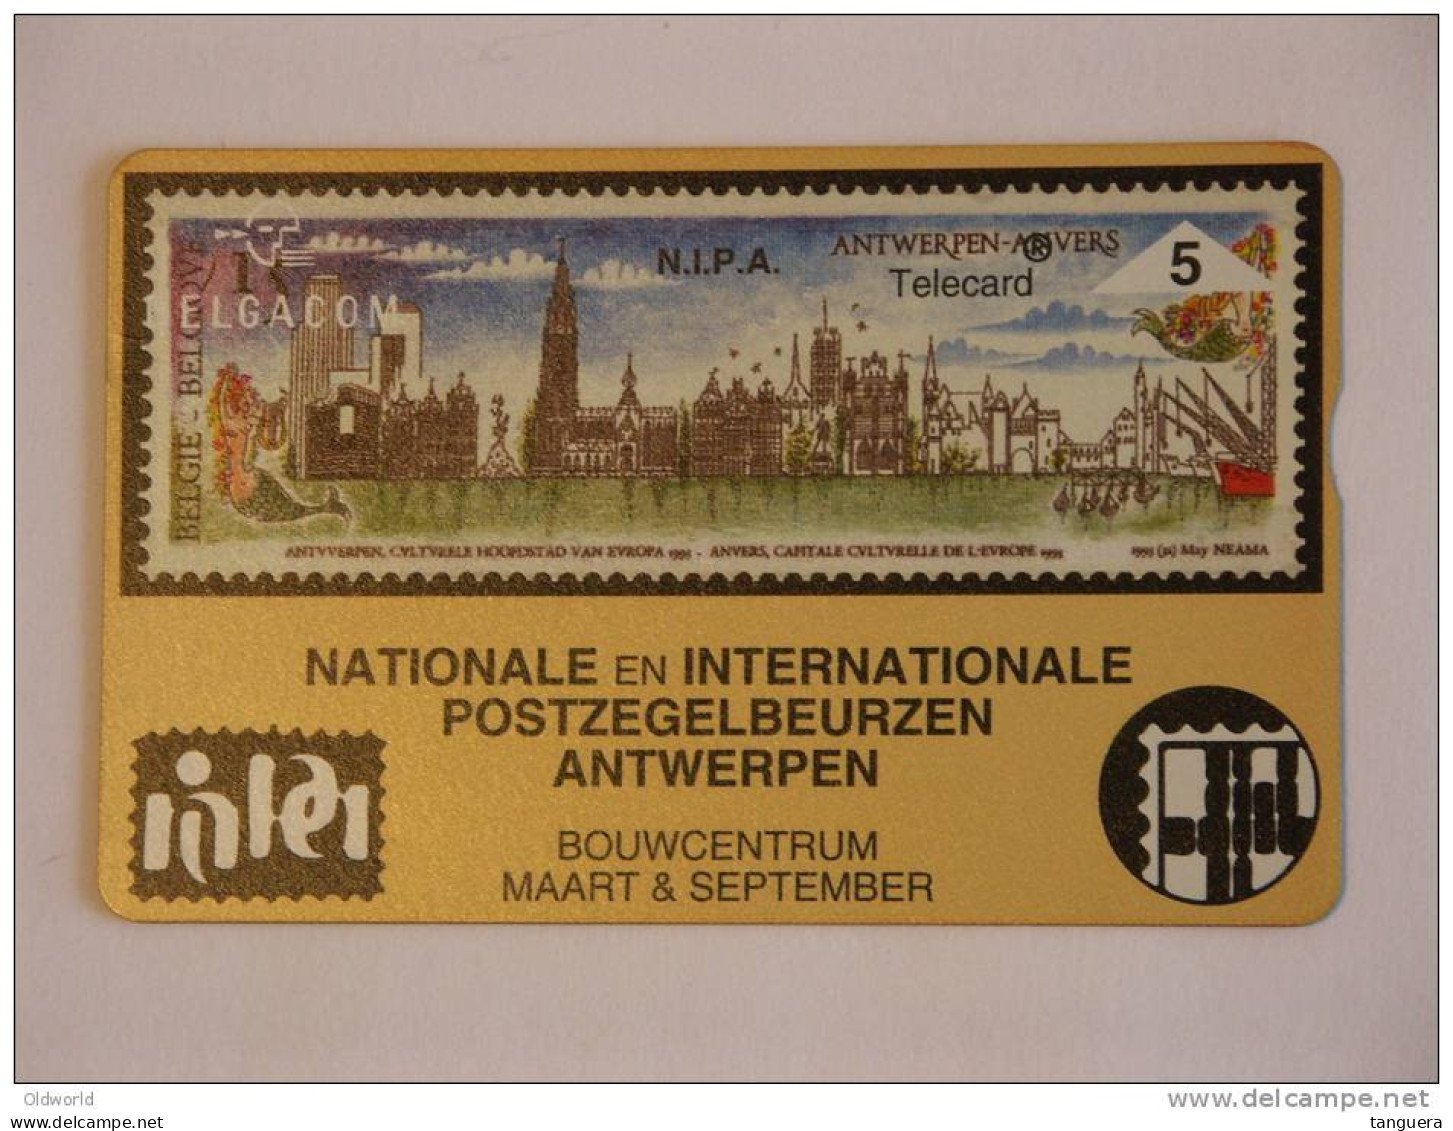 Telefoonkaart Telecard Belgacom Belgique België Privee N.I.P.A Beurs Bourse Timbre Postzegels Mint - Sin Chip